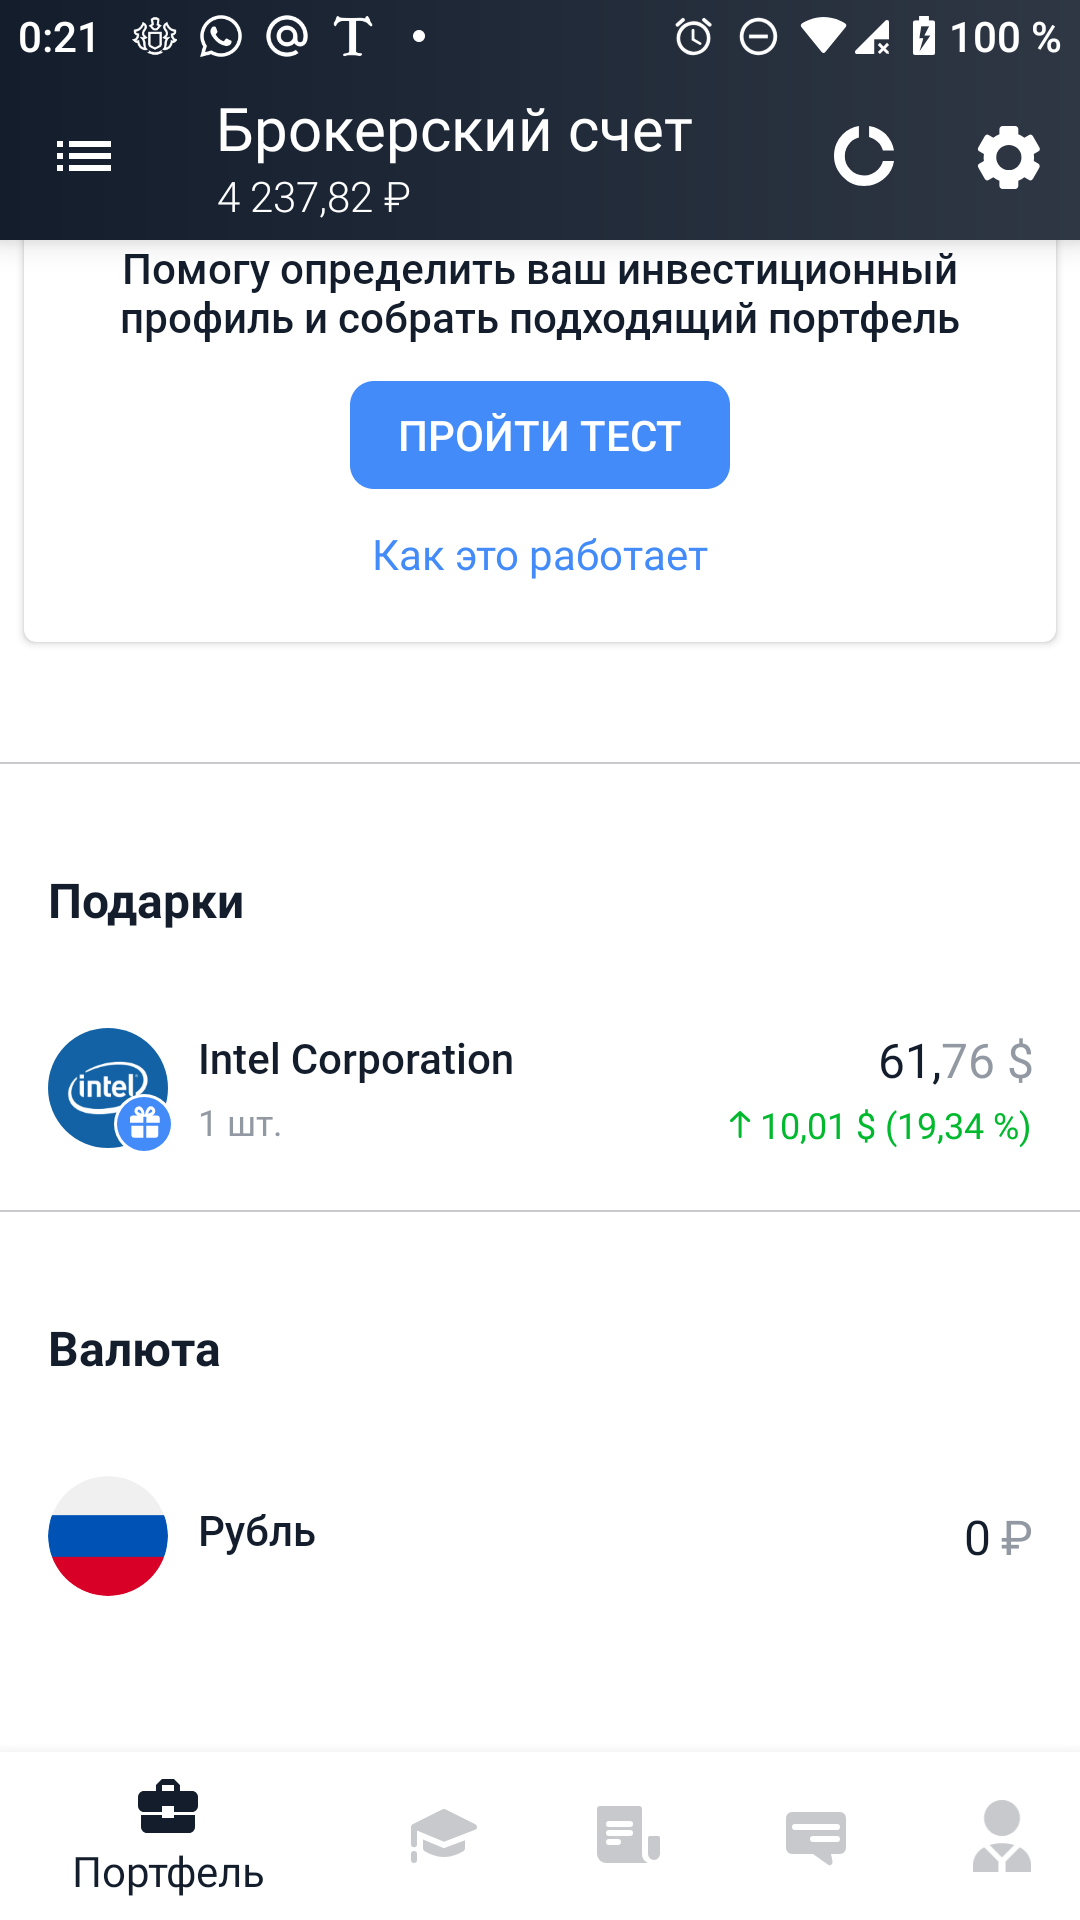 Бесплатная акция Intel от Тинькофф инвестиции